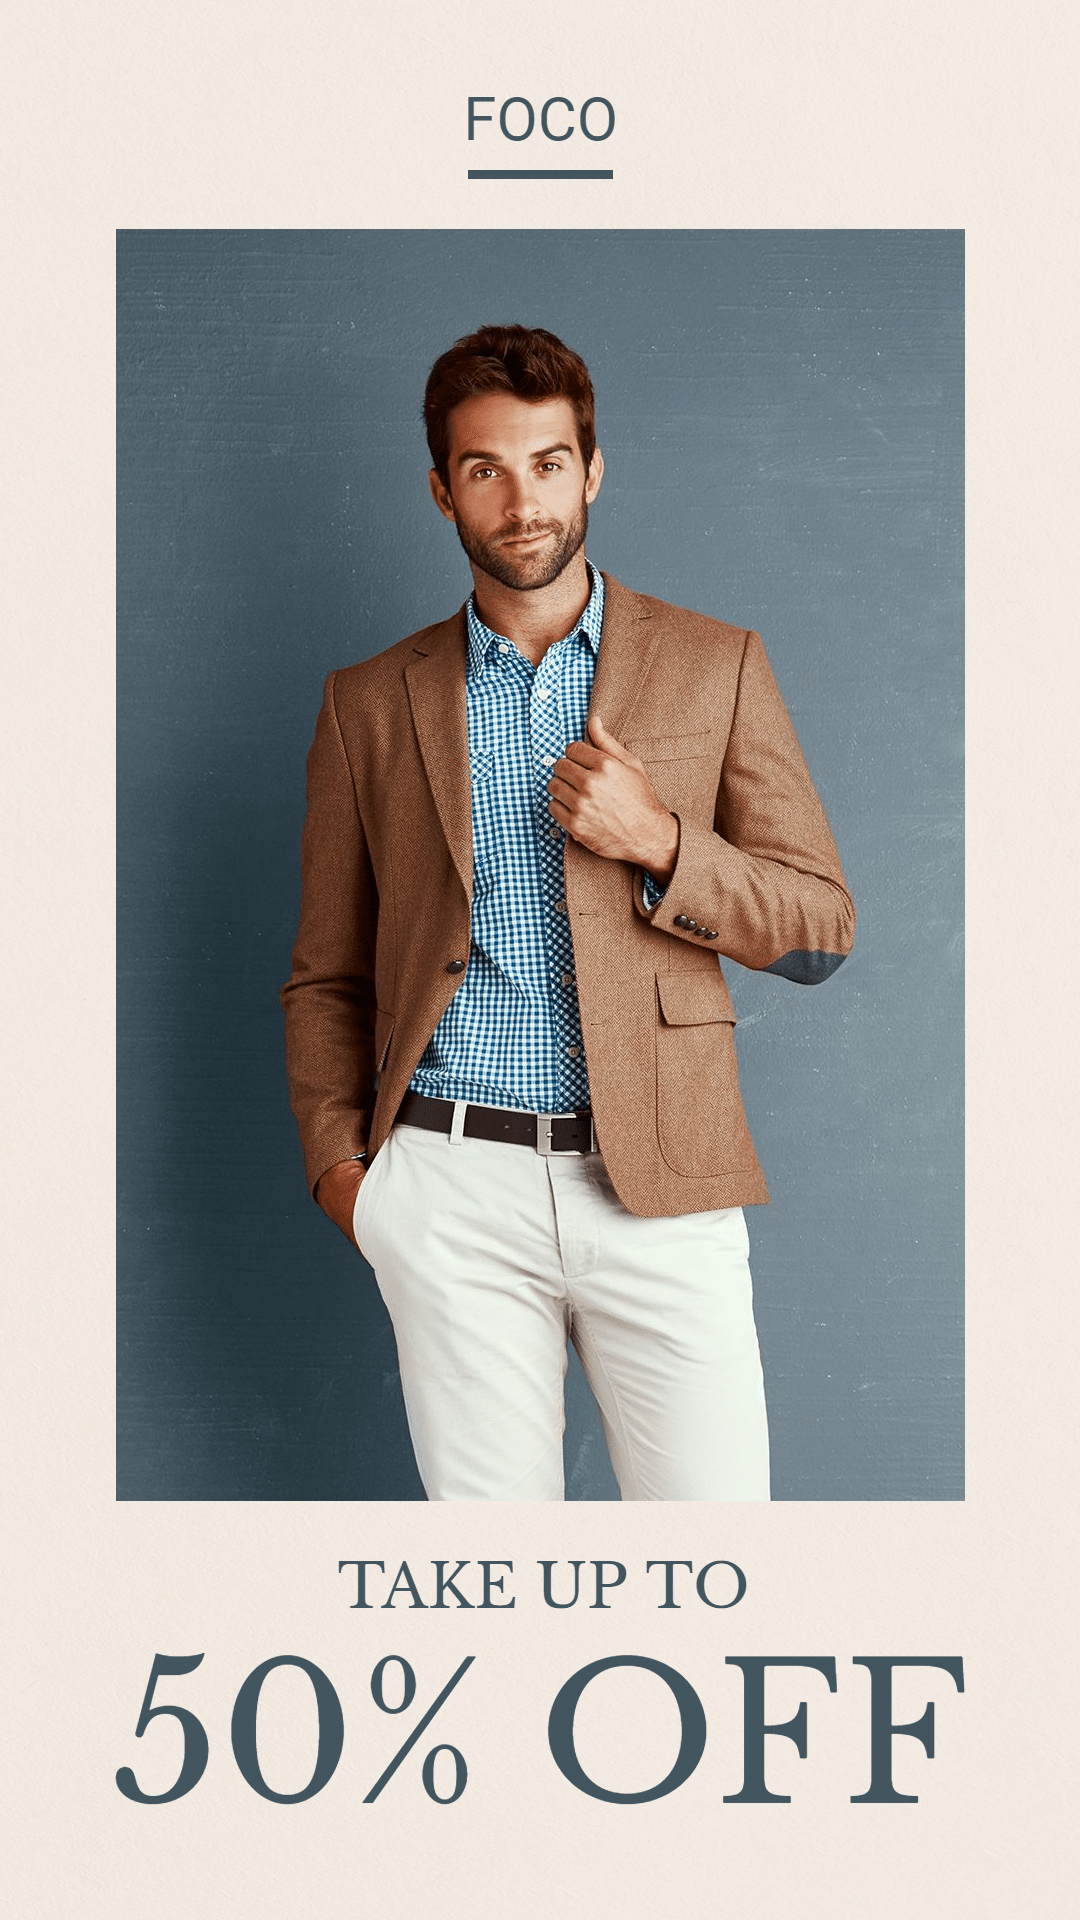 Men's Fashion Business Casual Suit Discount Sale Promo Ecommerce Story预览效果